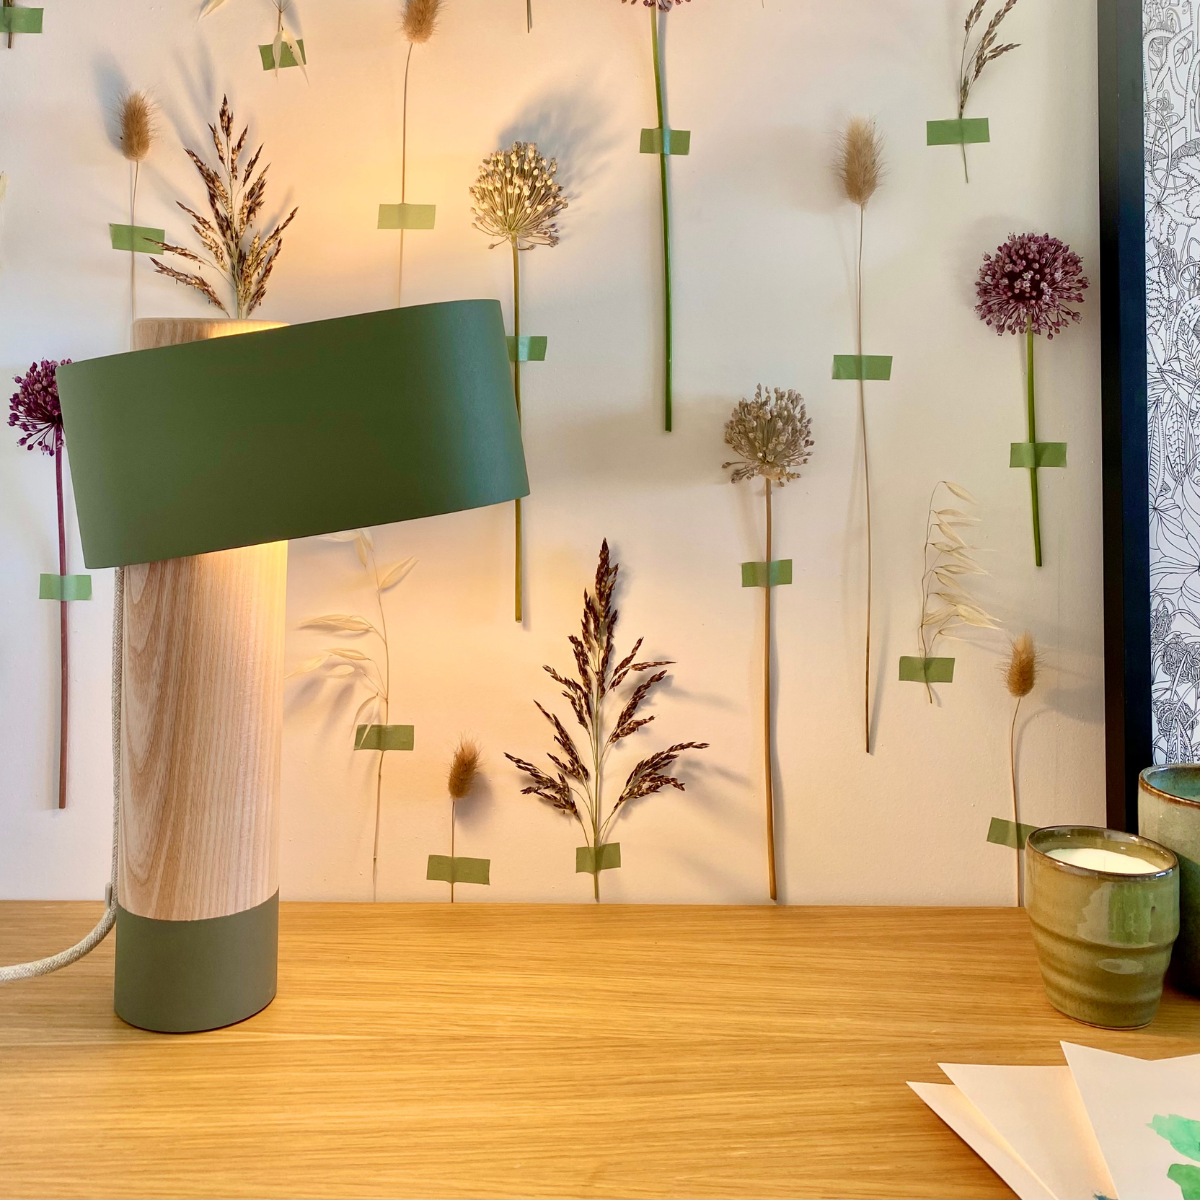 Une lampe design originale, 100 % durable et éco-conçue